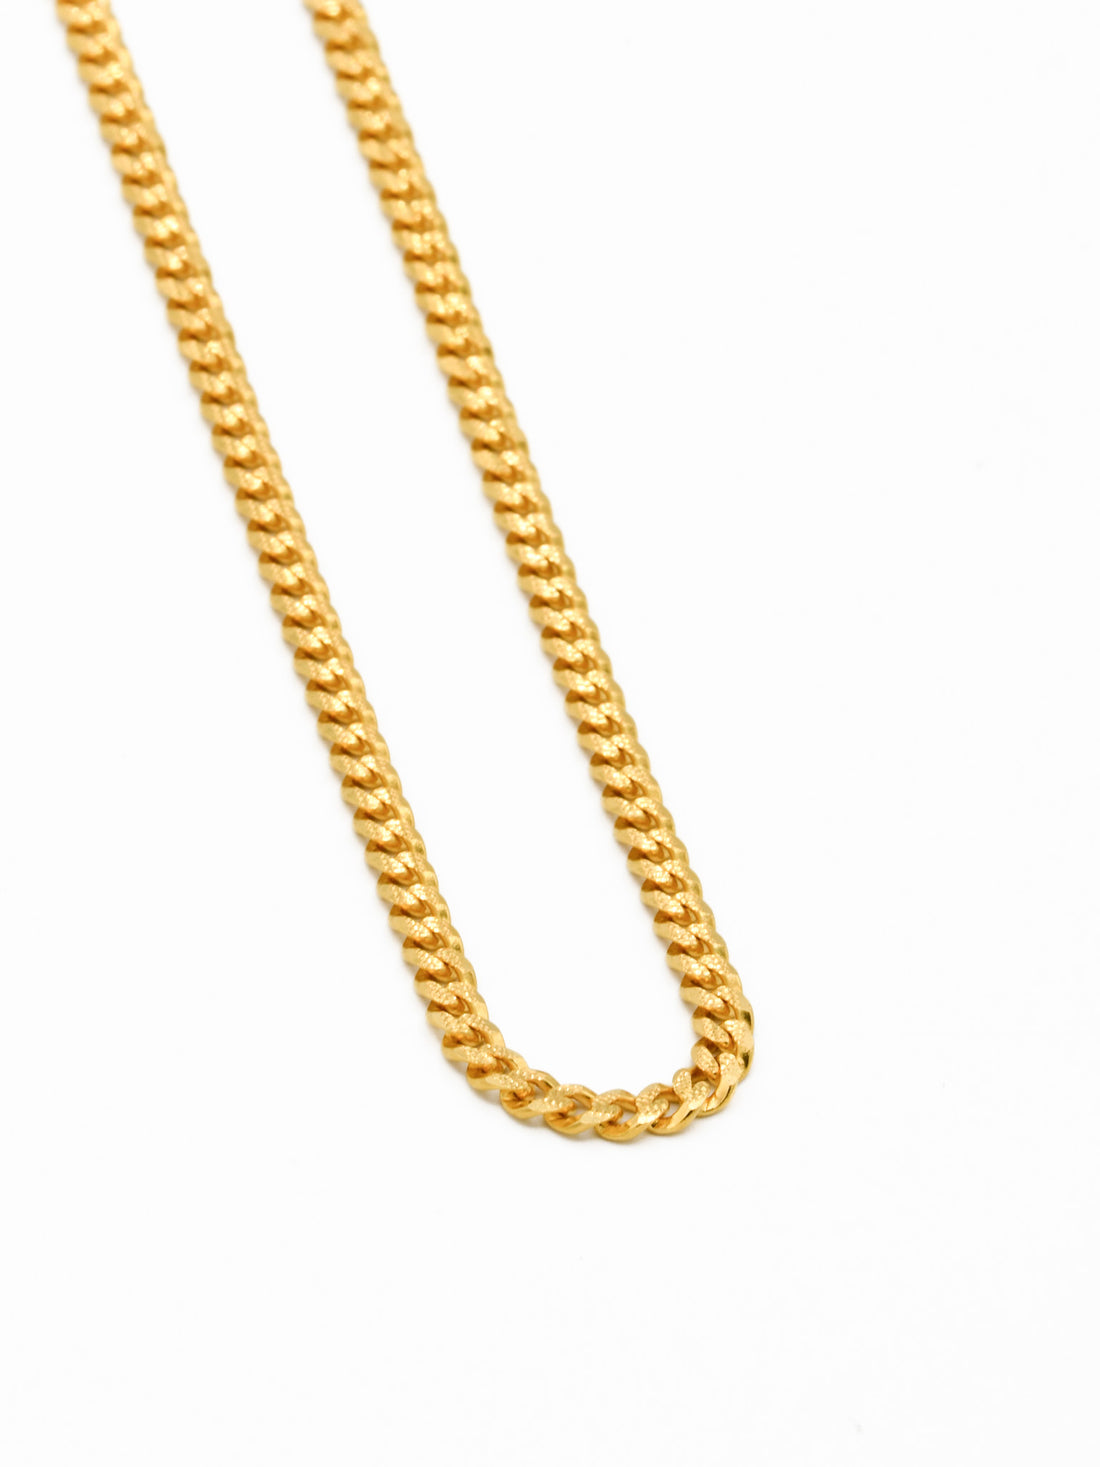 22ct Gold Curb Chain